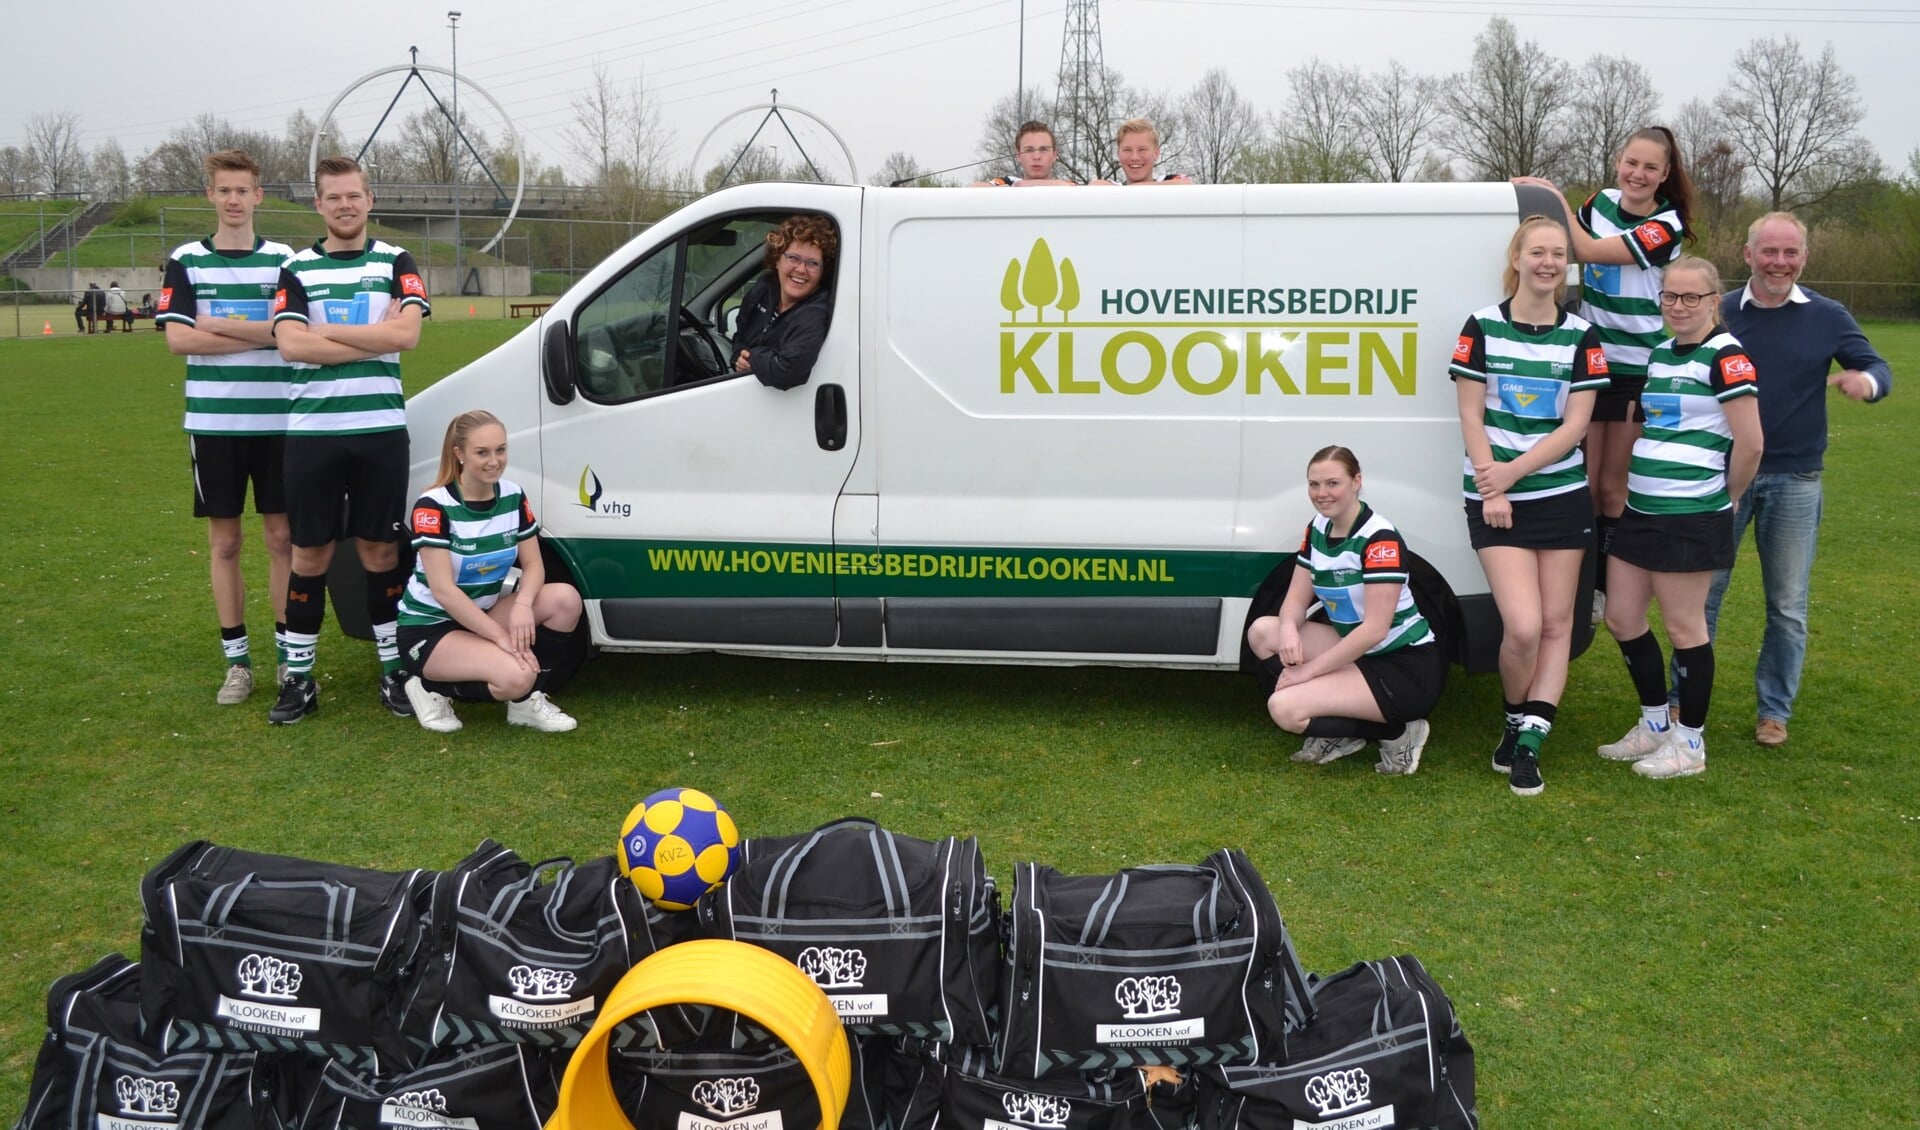 KVZ A1 samen met sponsor en eigenaar van hoveniersbedrijf Klooken. Foto: PR